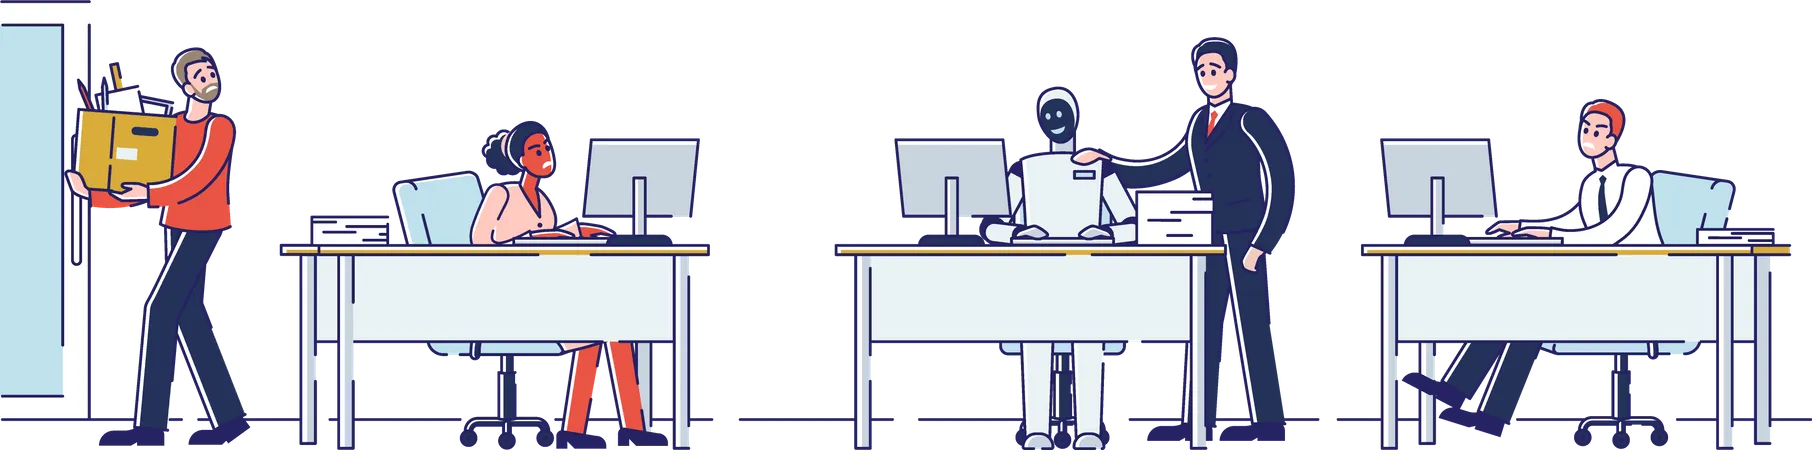 Menschen arbeiten mit Robotern im Büro  Illustration